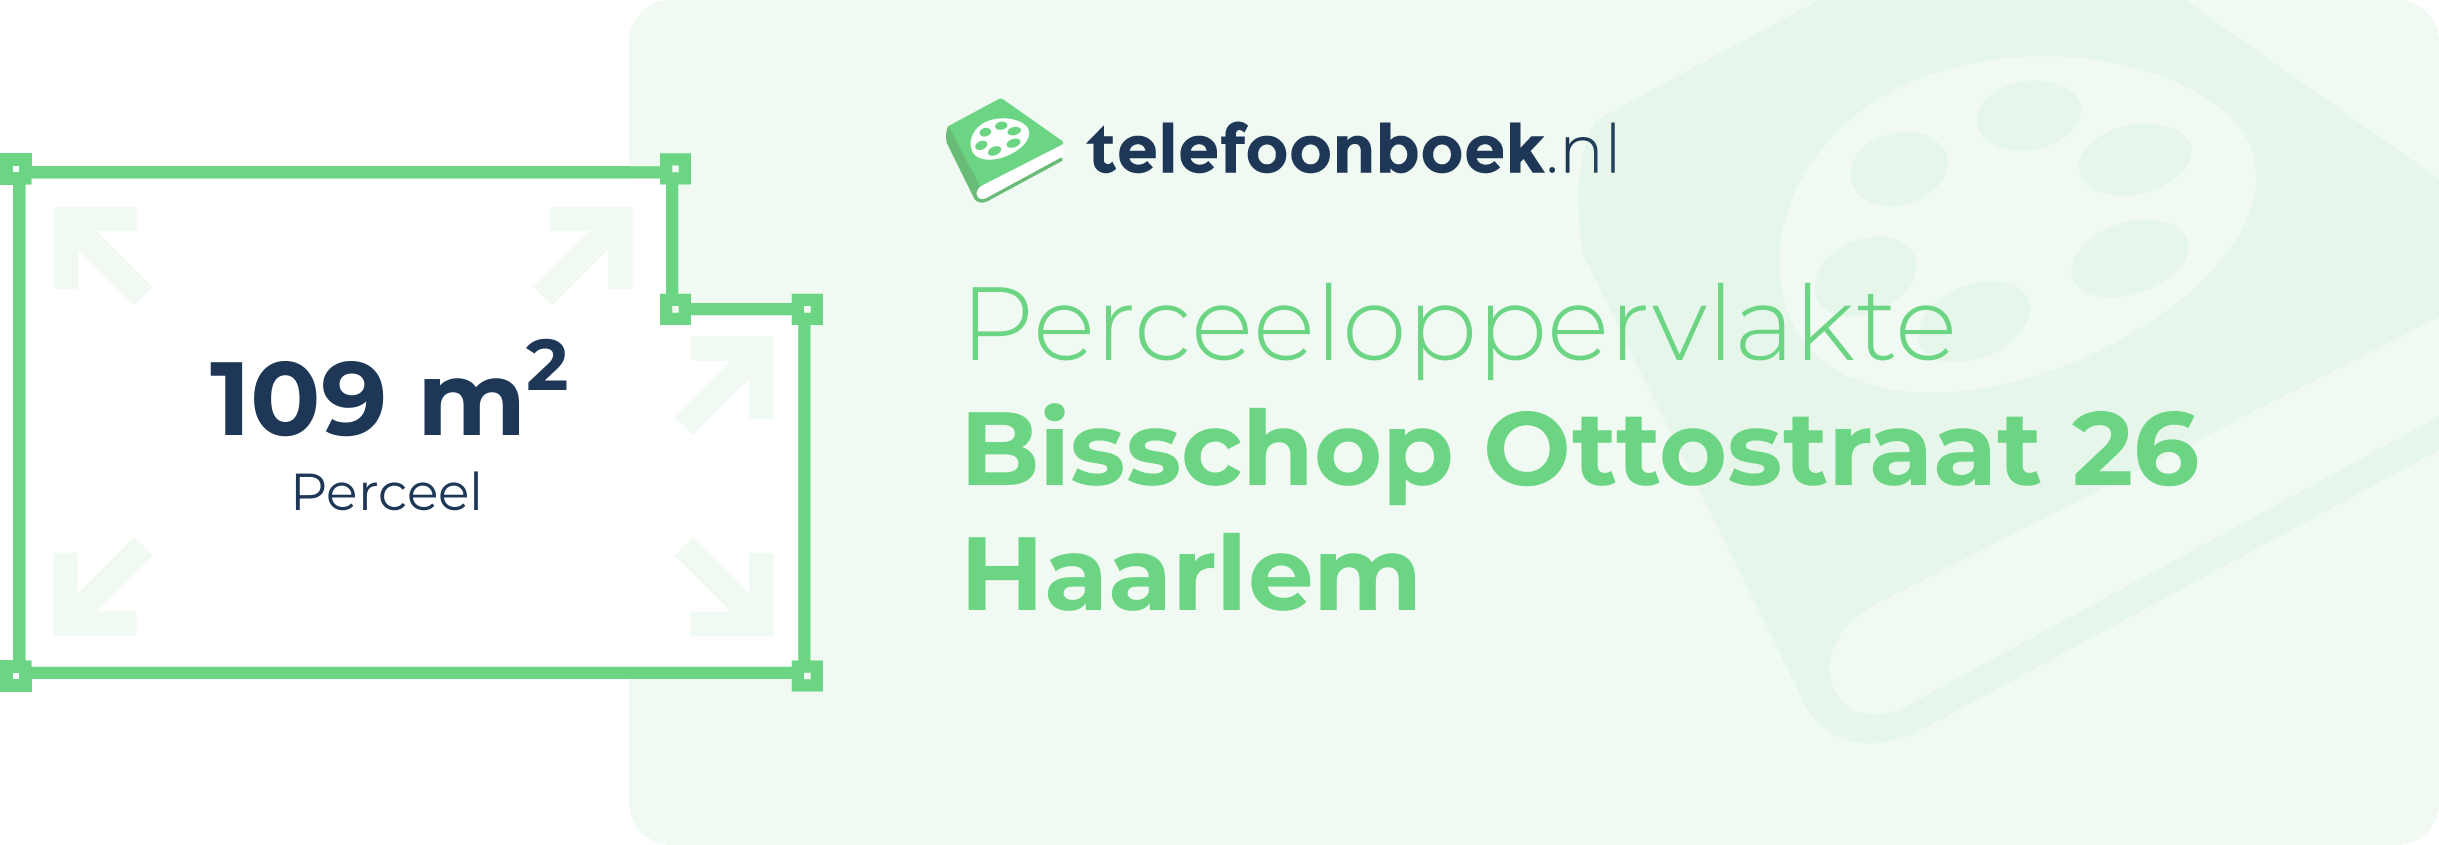 Perceeloppervlakte Bisschop Ottostraat 26 Haarlem